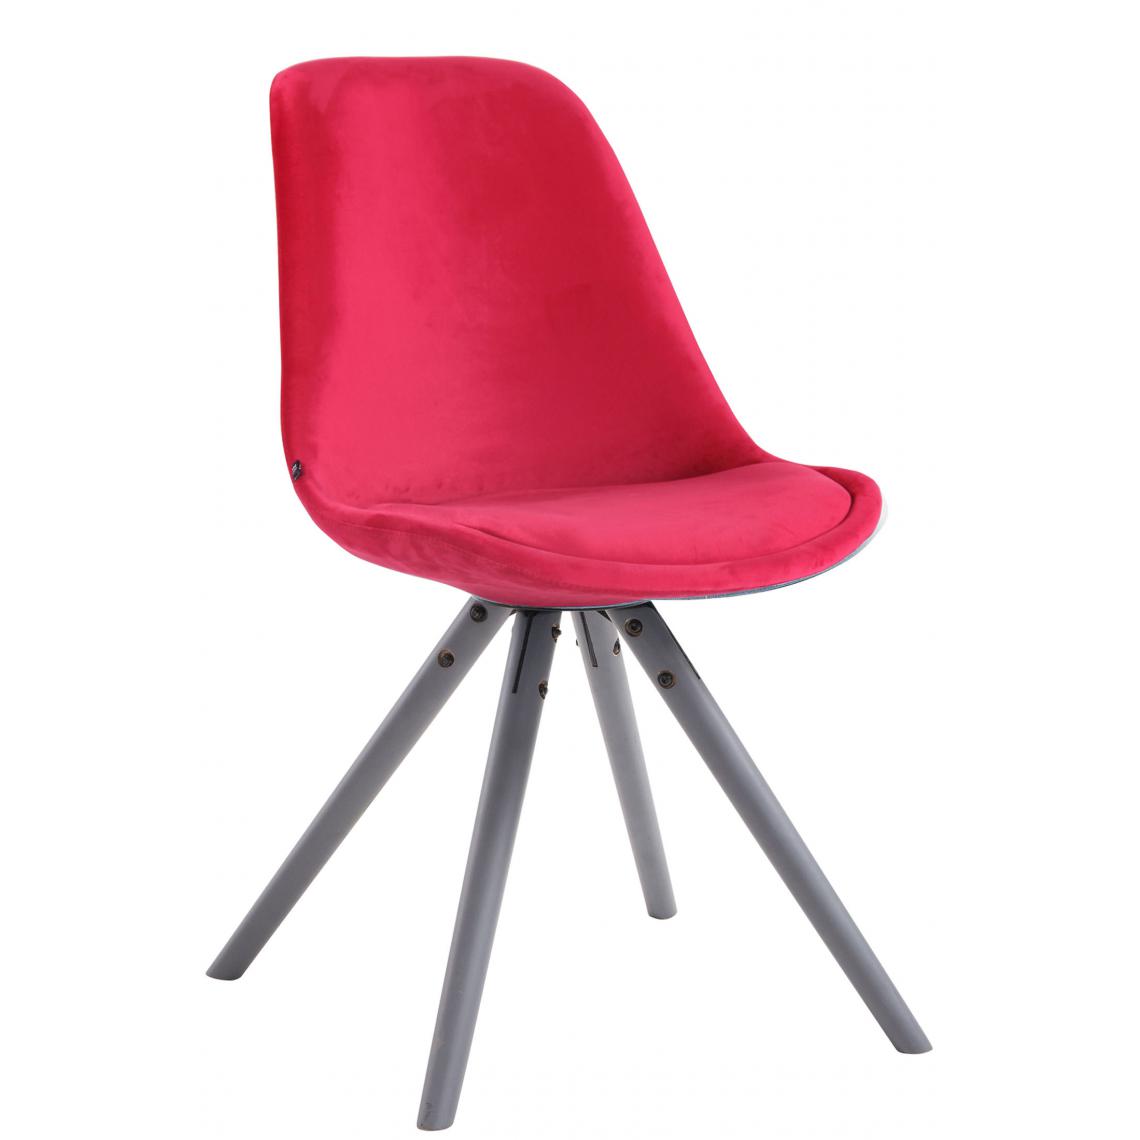 Icaverne - Superbe Chaise visiteur ronde en velours Katmandou gris couleur rouge - Chaises